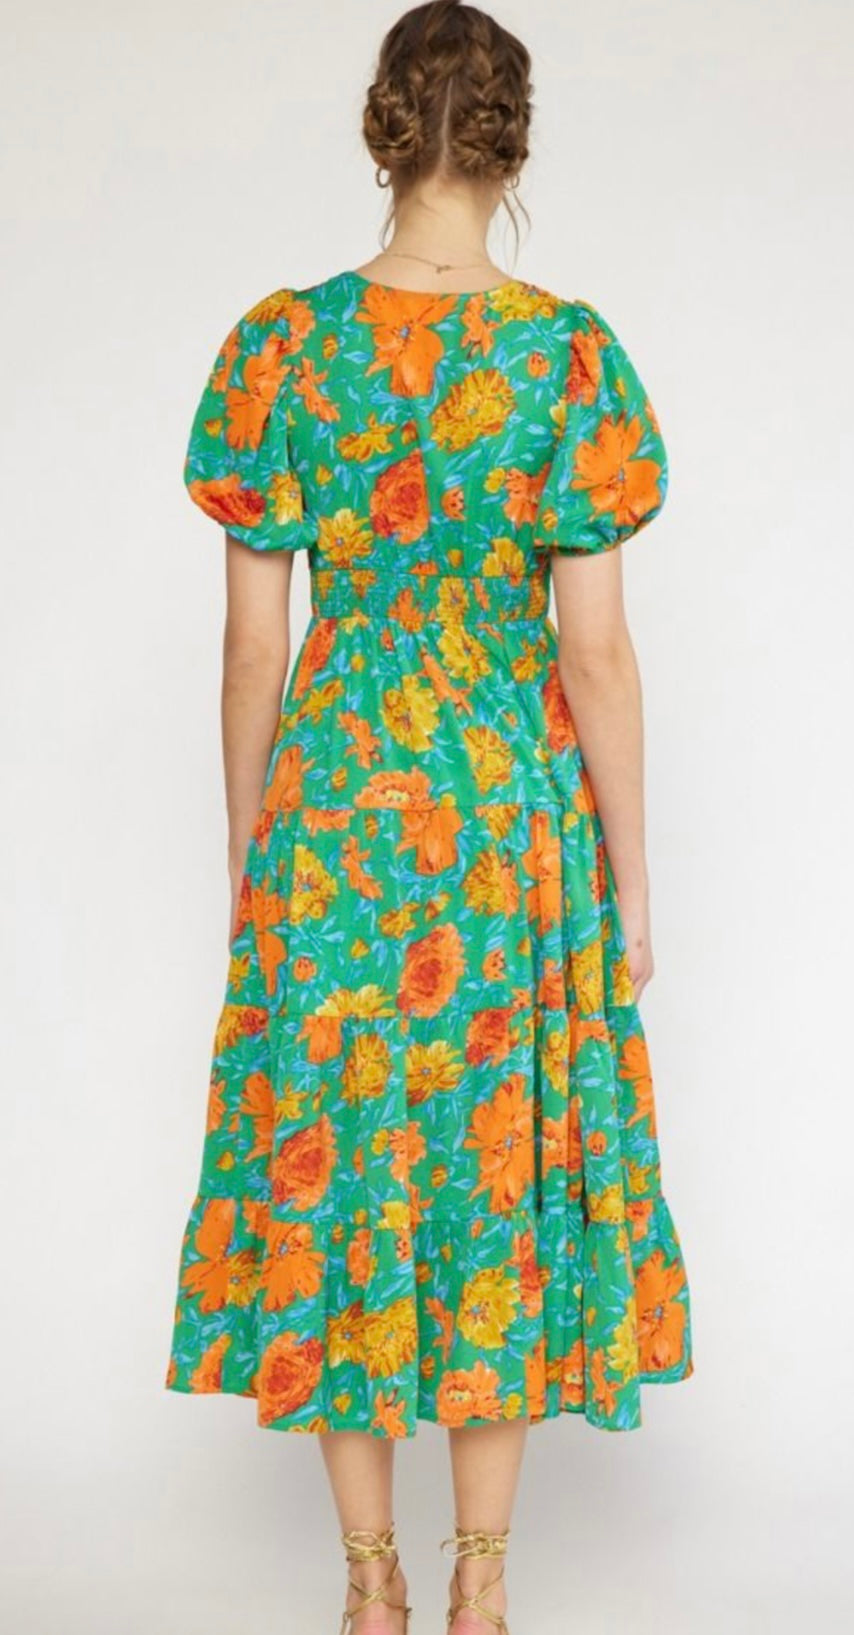 Green Floral Print Puff Sleeve Midi Dress